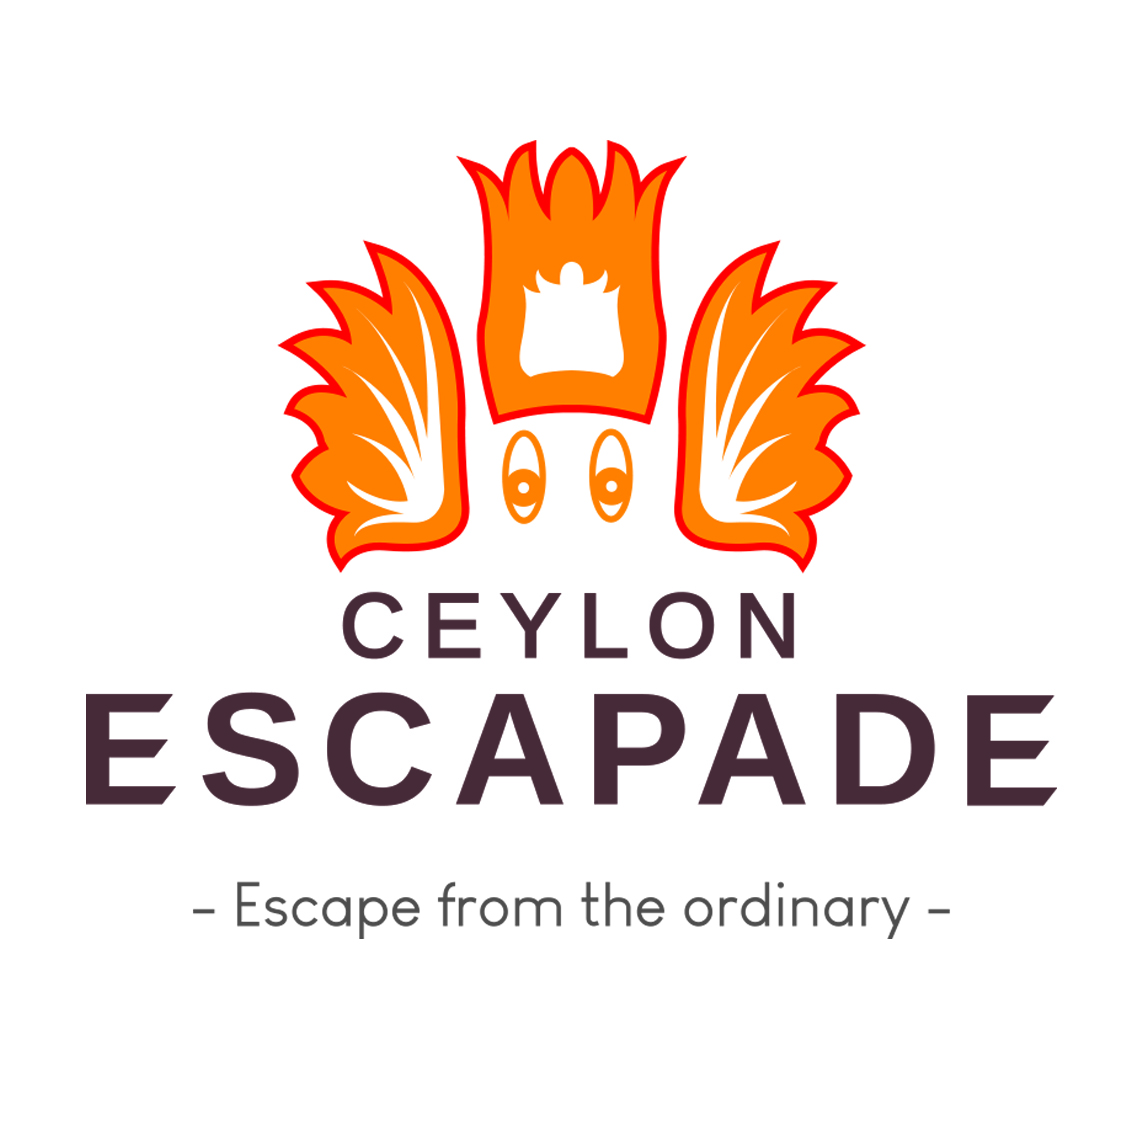 Ceylon Escapade